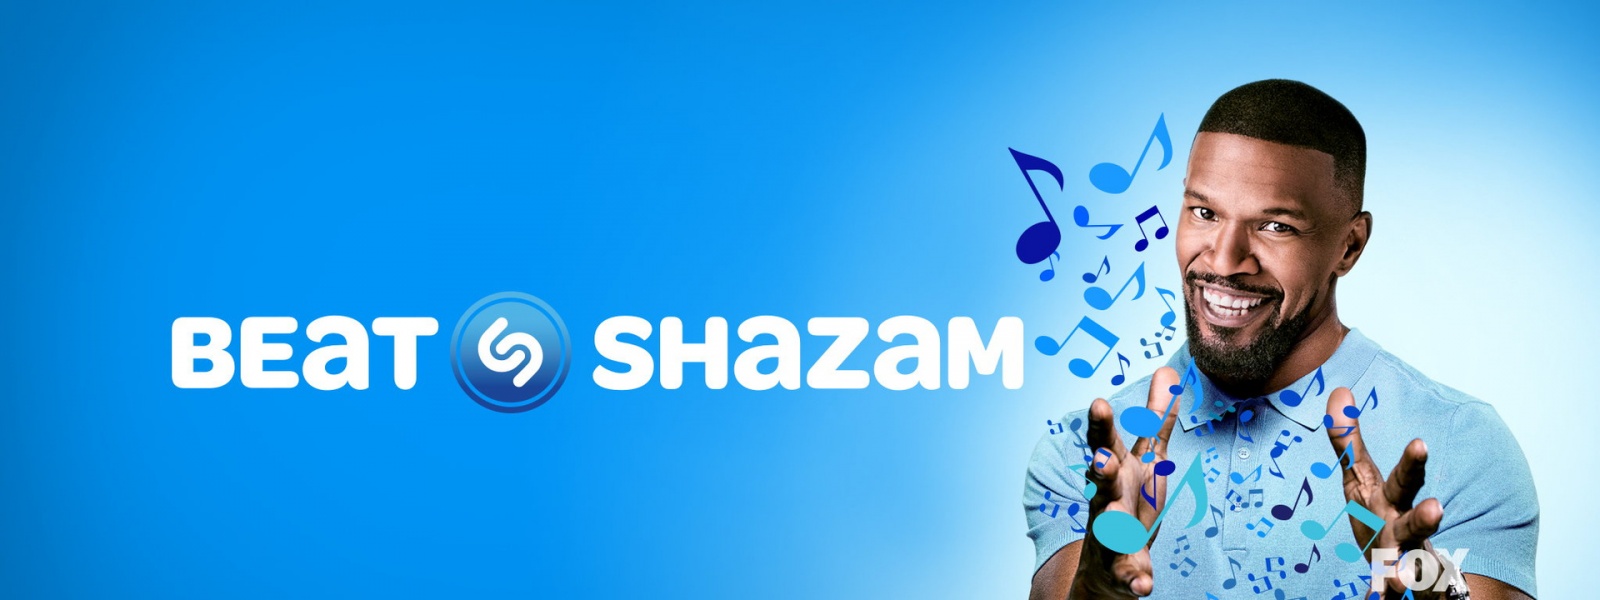 Интервью с Джошем Патриджем (Shazam) про маркетинг, бизнес, стратегию и новые продукты - 3